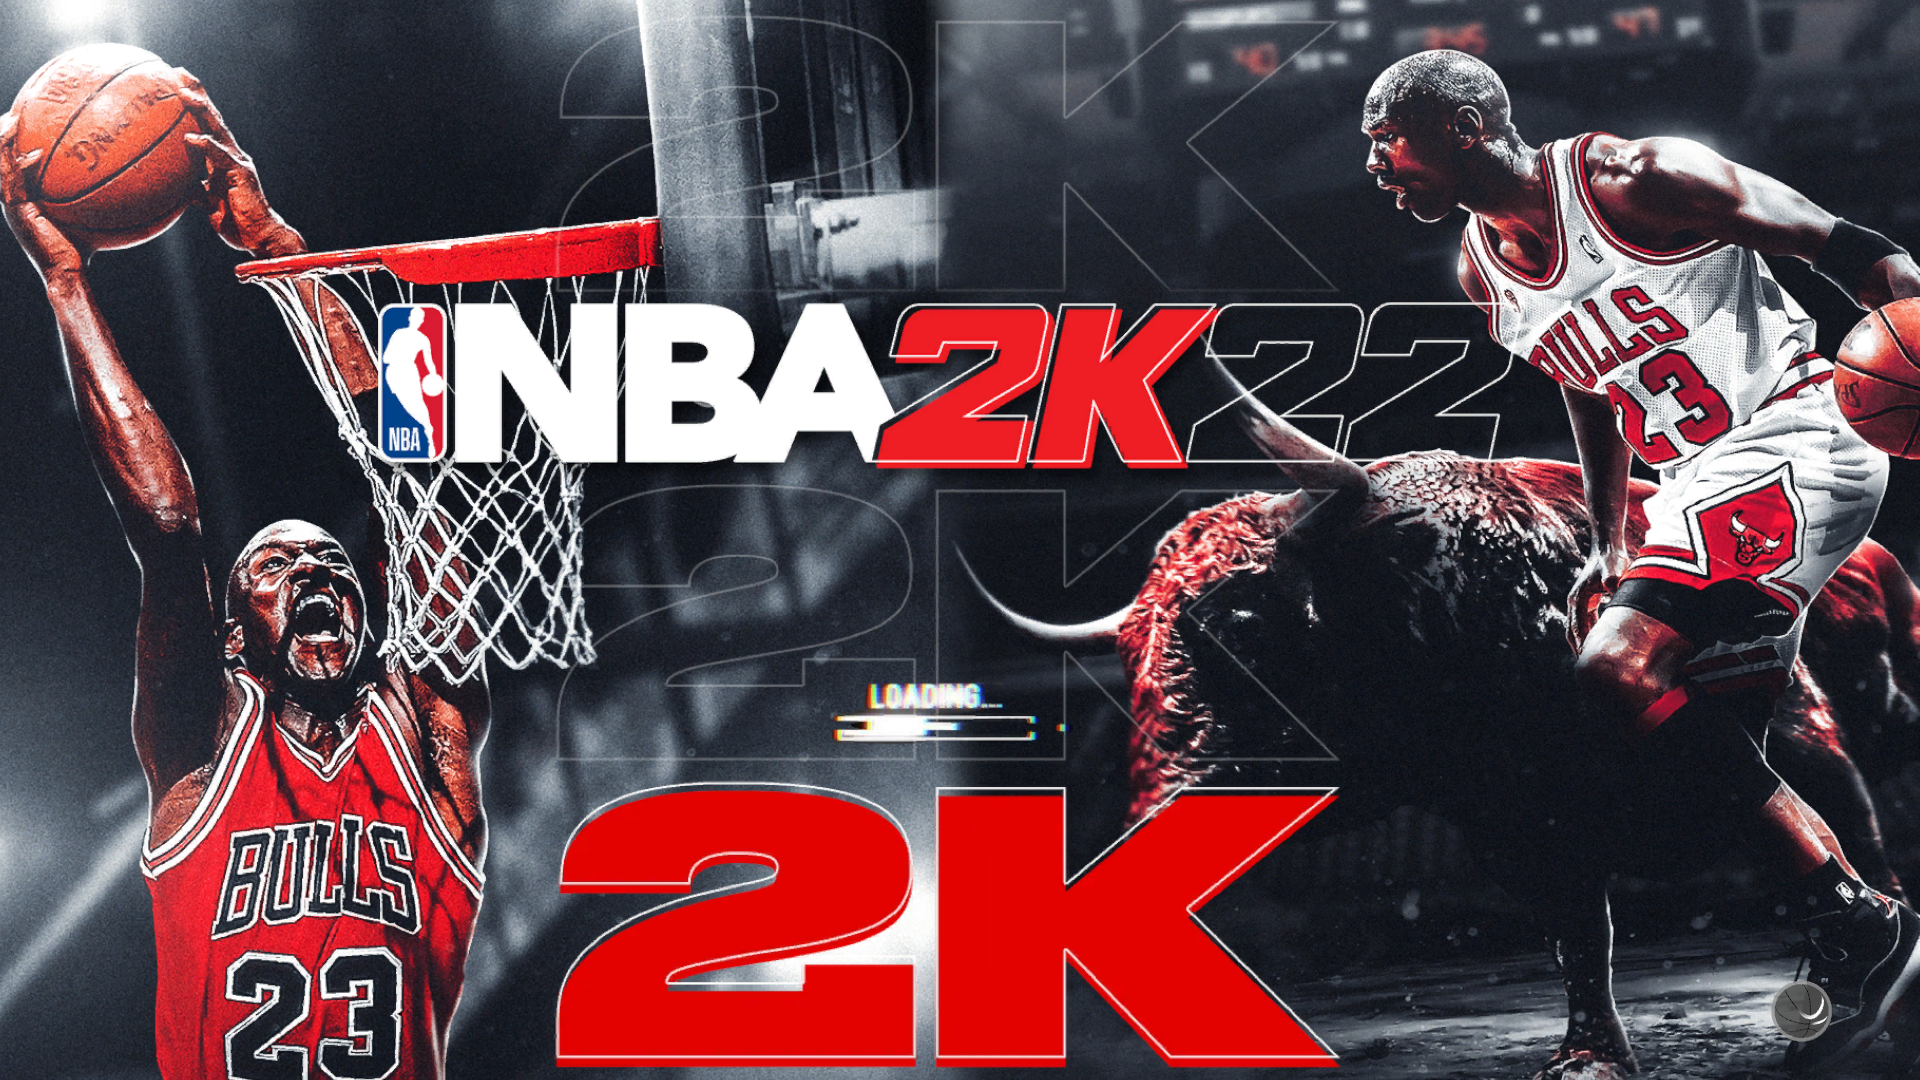 NBA 2K22 2KGOD Legends Never Die Presentation for NBA 2K21.